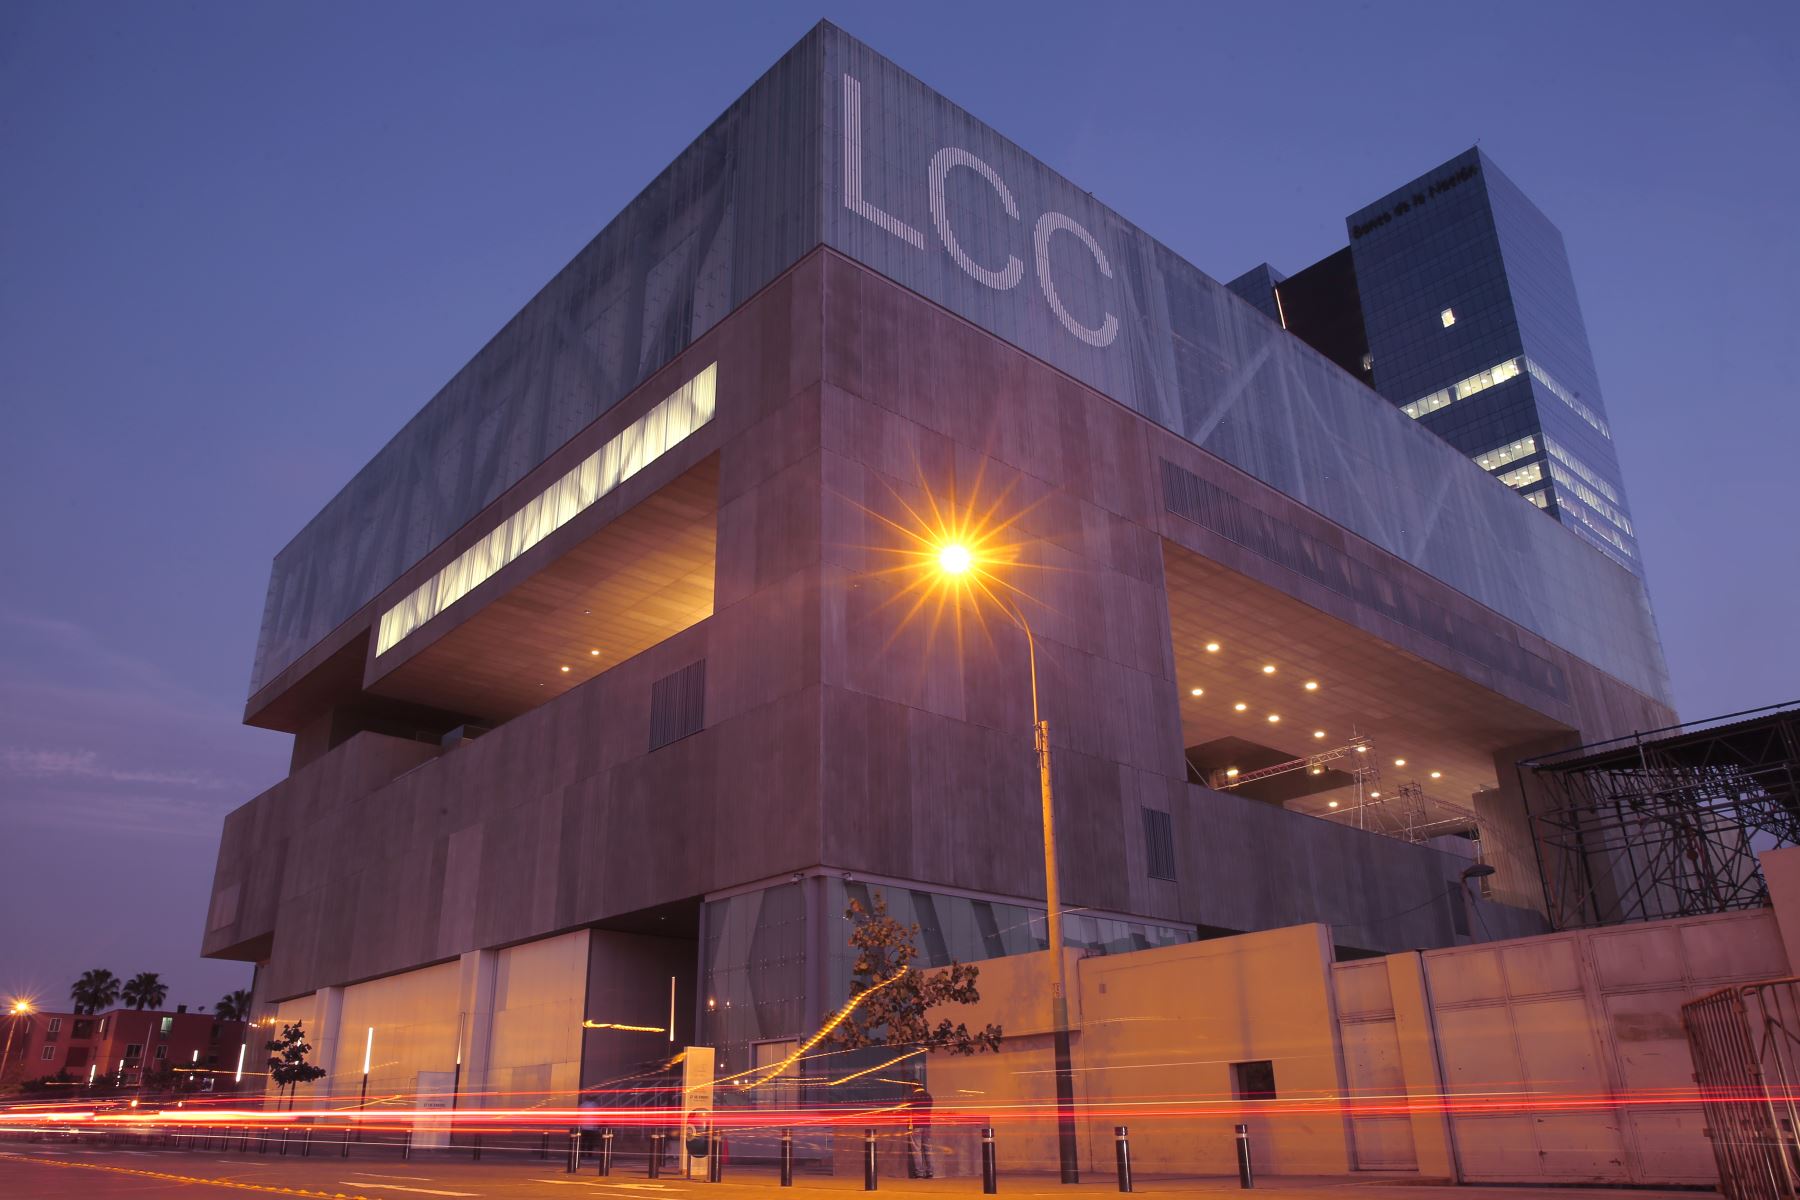 Fachada del Centro de Convenciones de Lima, lugar que se llevará el APEC 2016.Foto:Oscar Farje Gomero